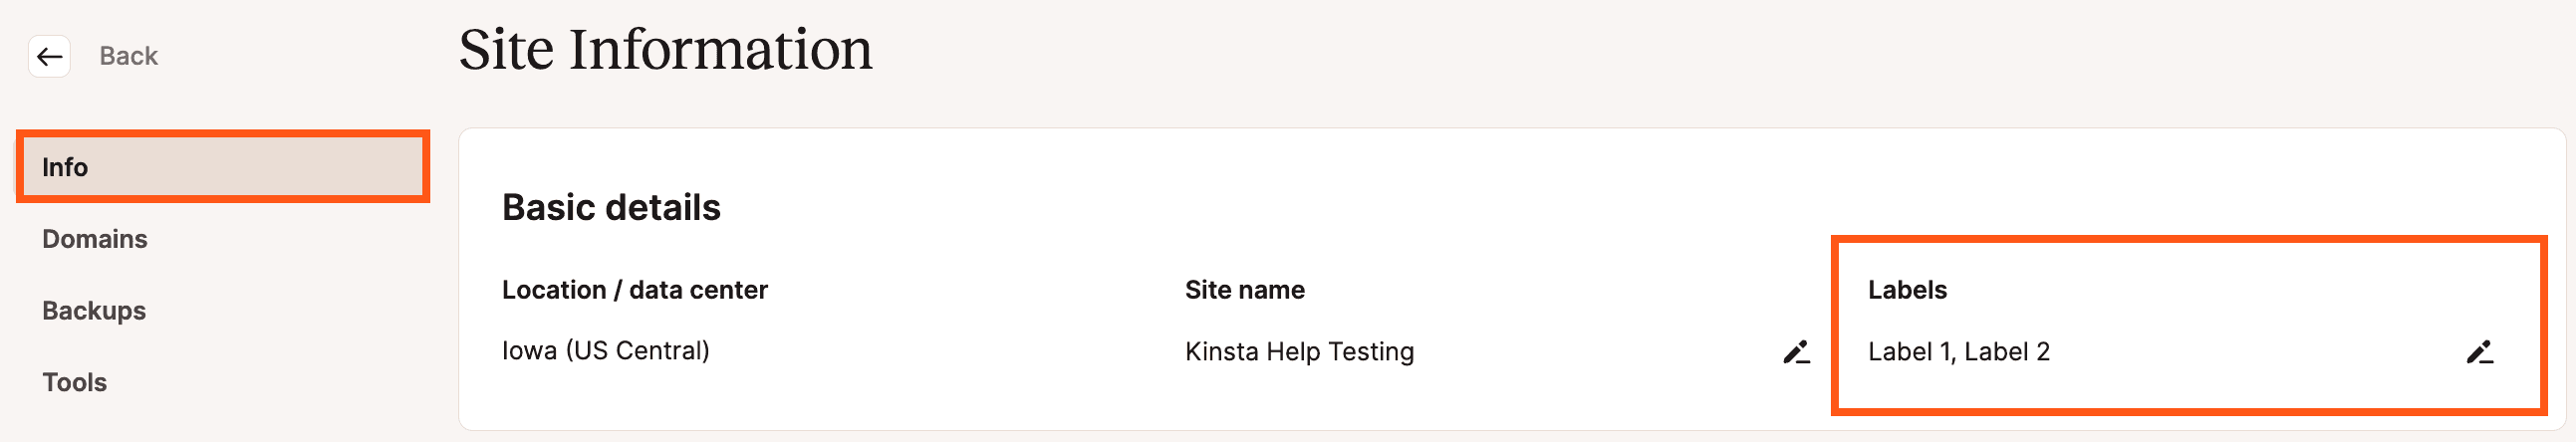 Etiquetas do site na página Informações do site no MyKinsta.